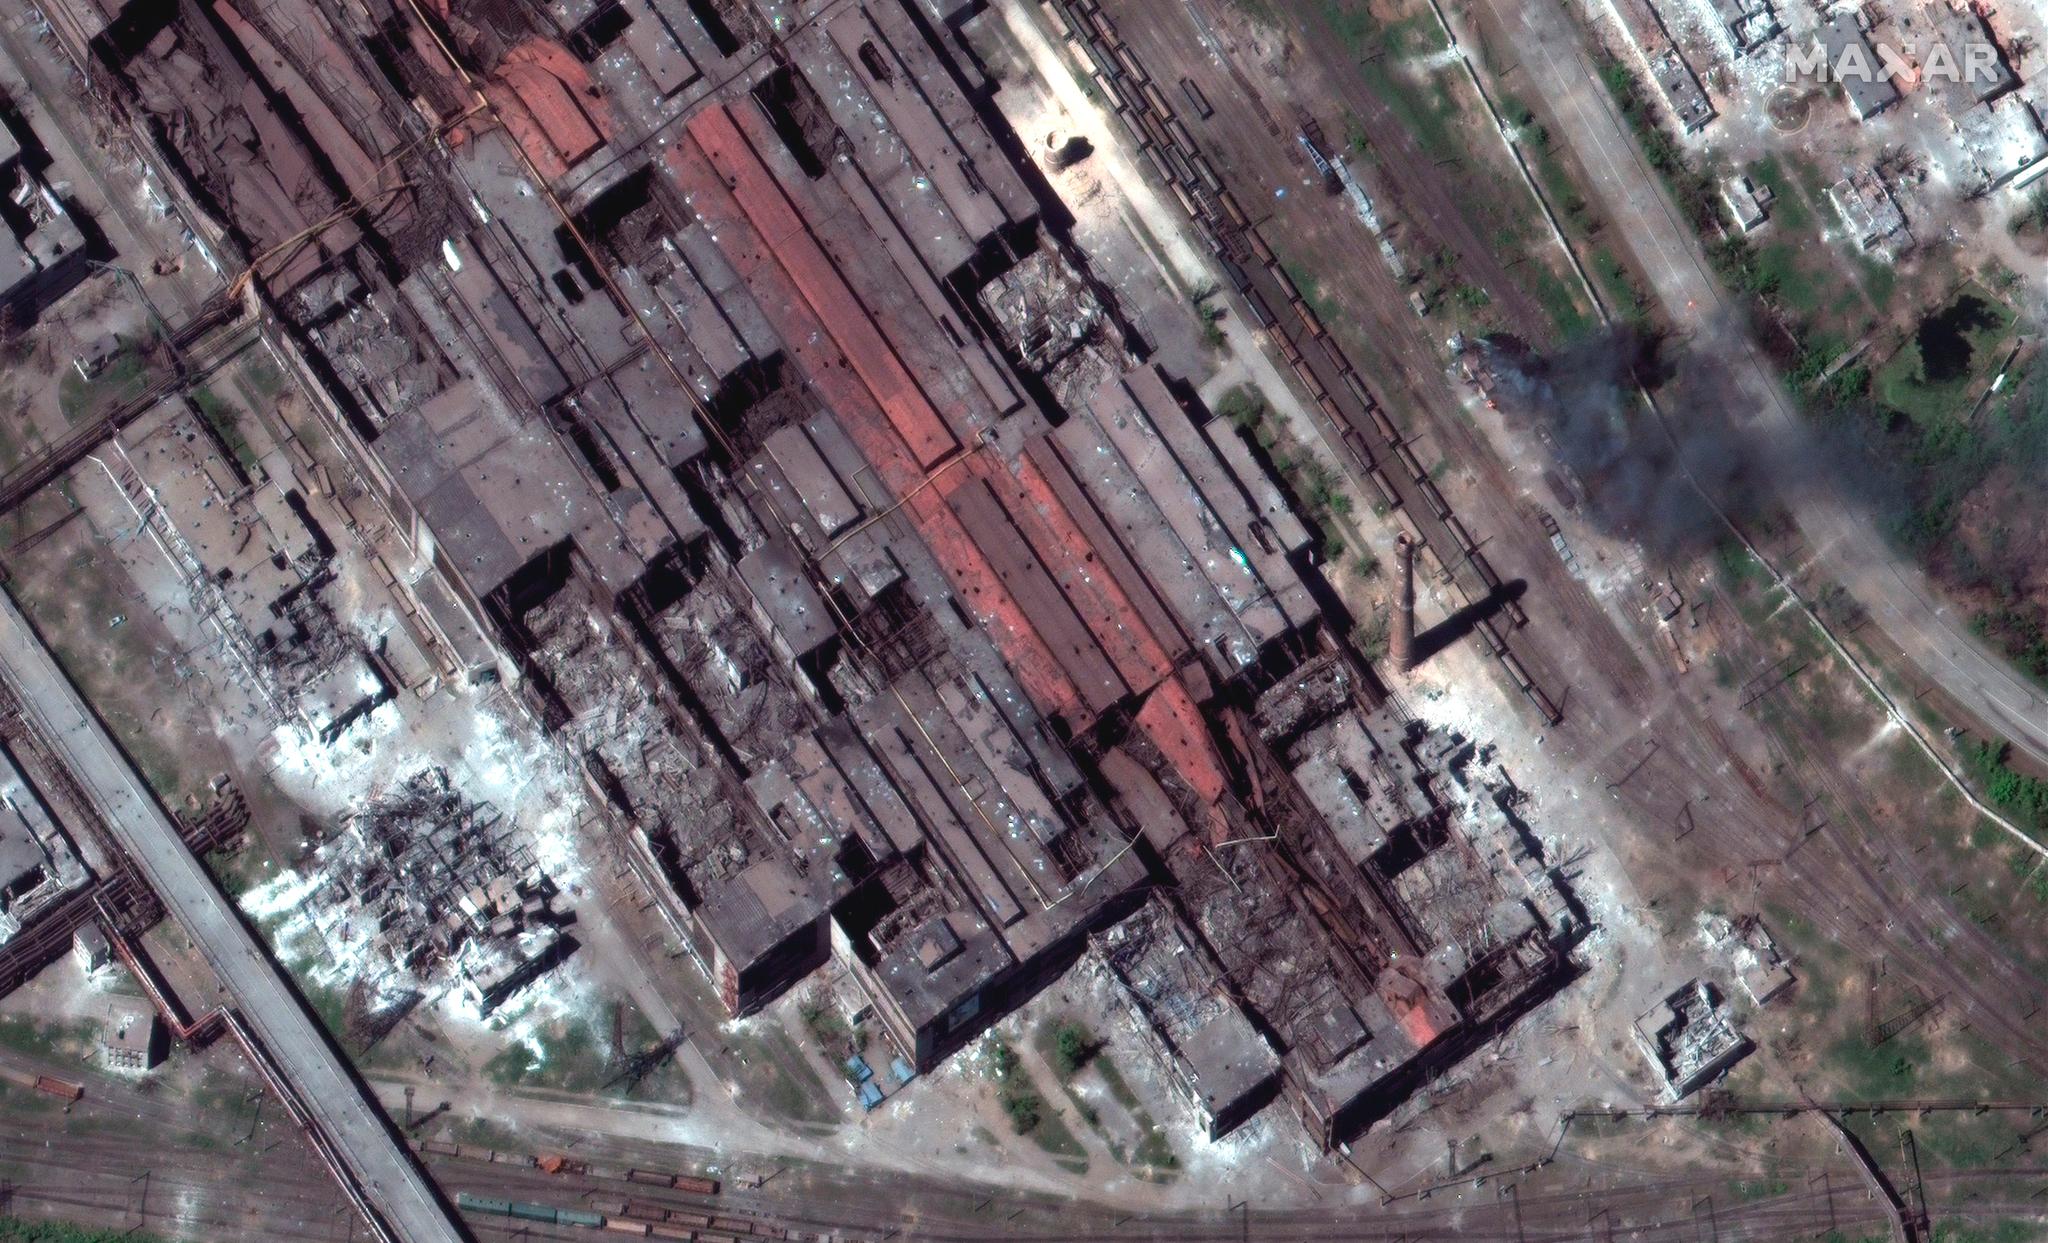 Det enorme stålverket Azovstal var på et tidspunkt ly for rundt 1.000 sivile og 2.000 soldater, ifølge ukrainske kilder. Bildet er tatt 12. mai og viser østre del av industriområdet. Satellittfoto: Maxar Technologies via AP / NTB